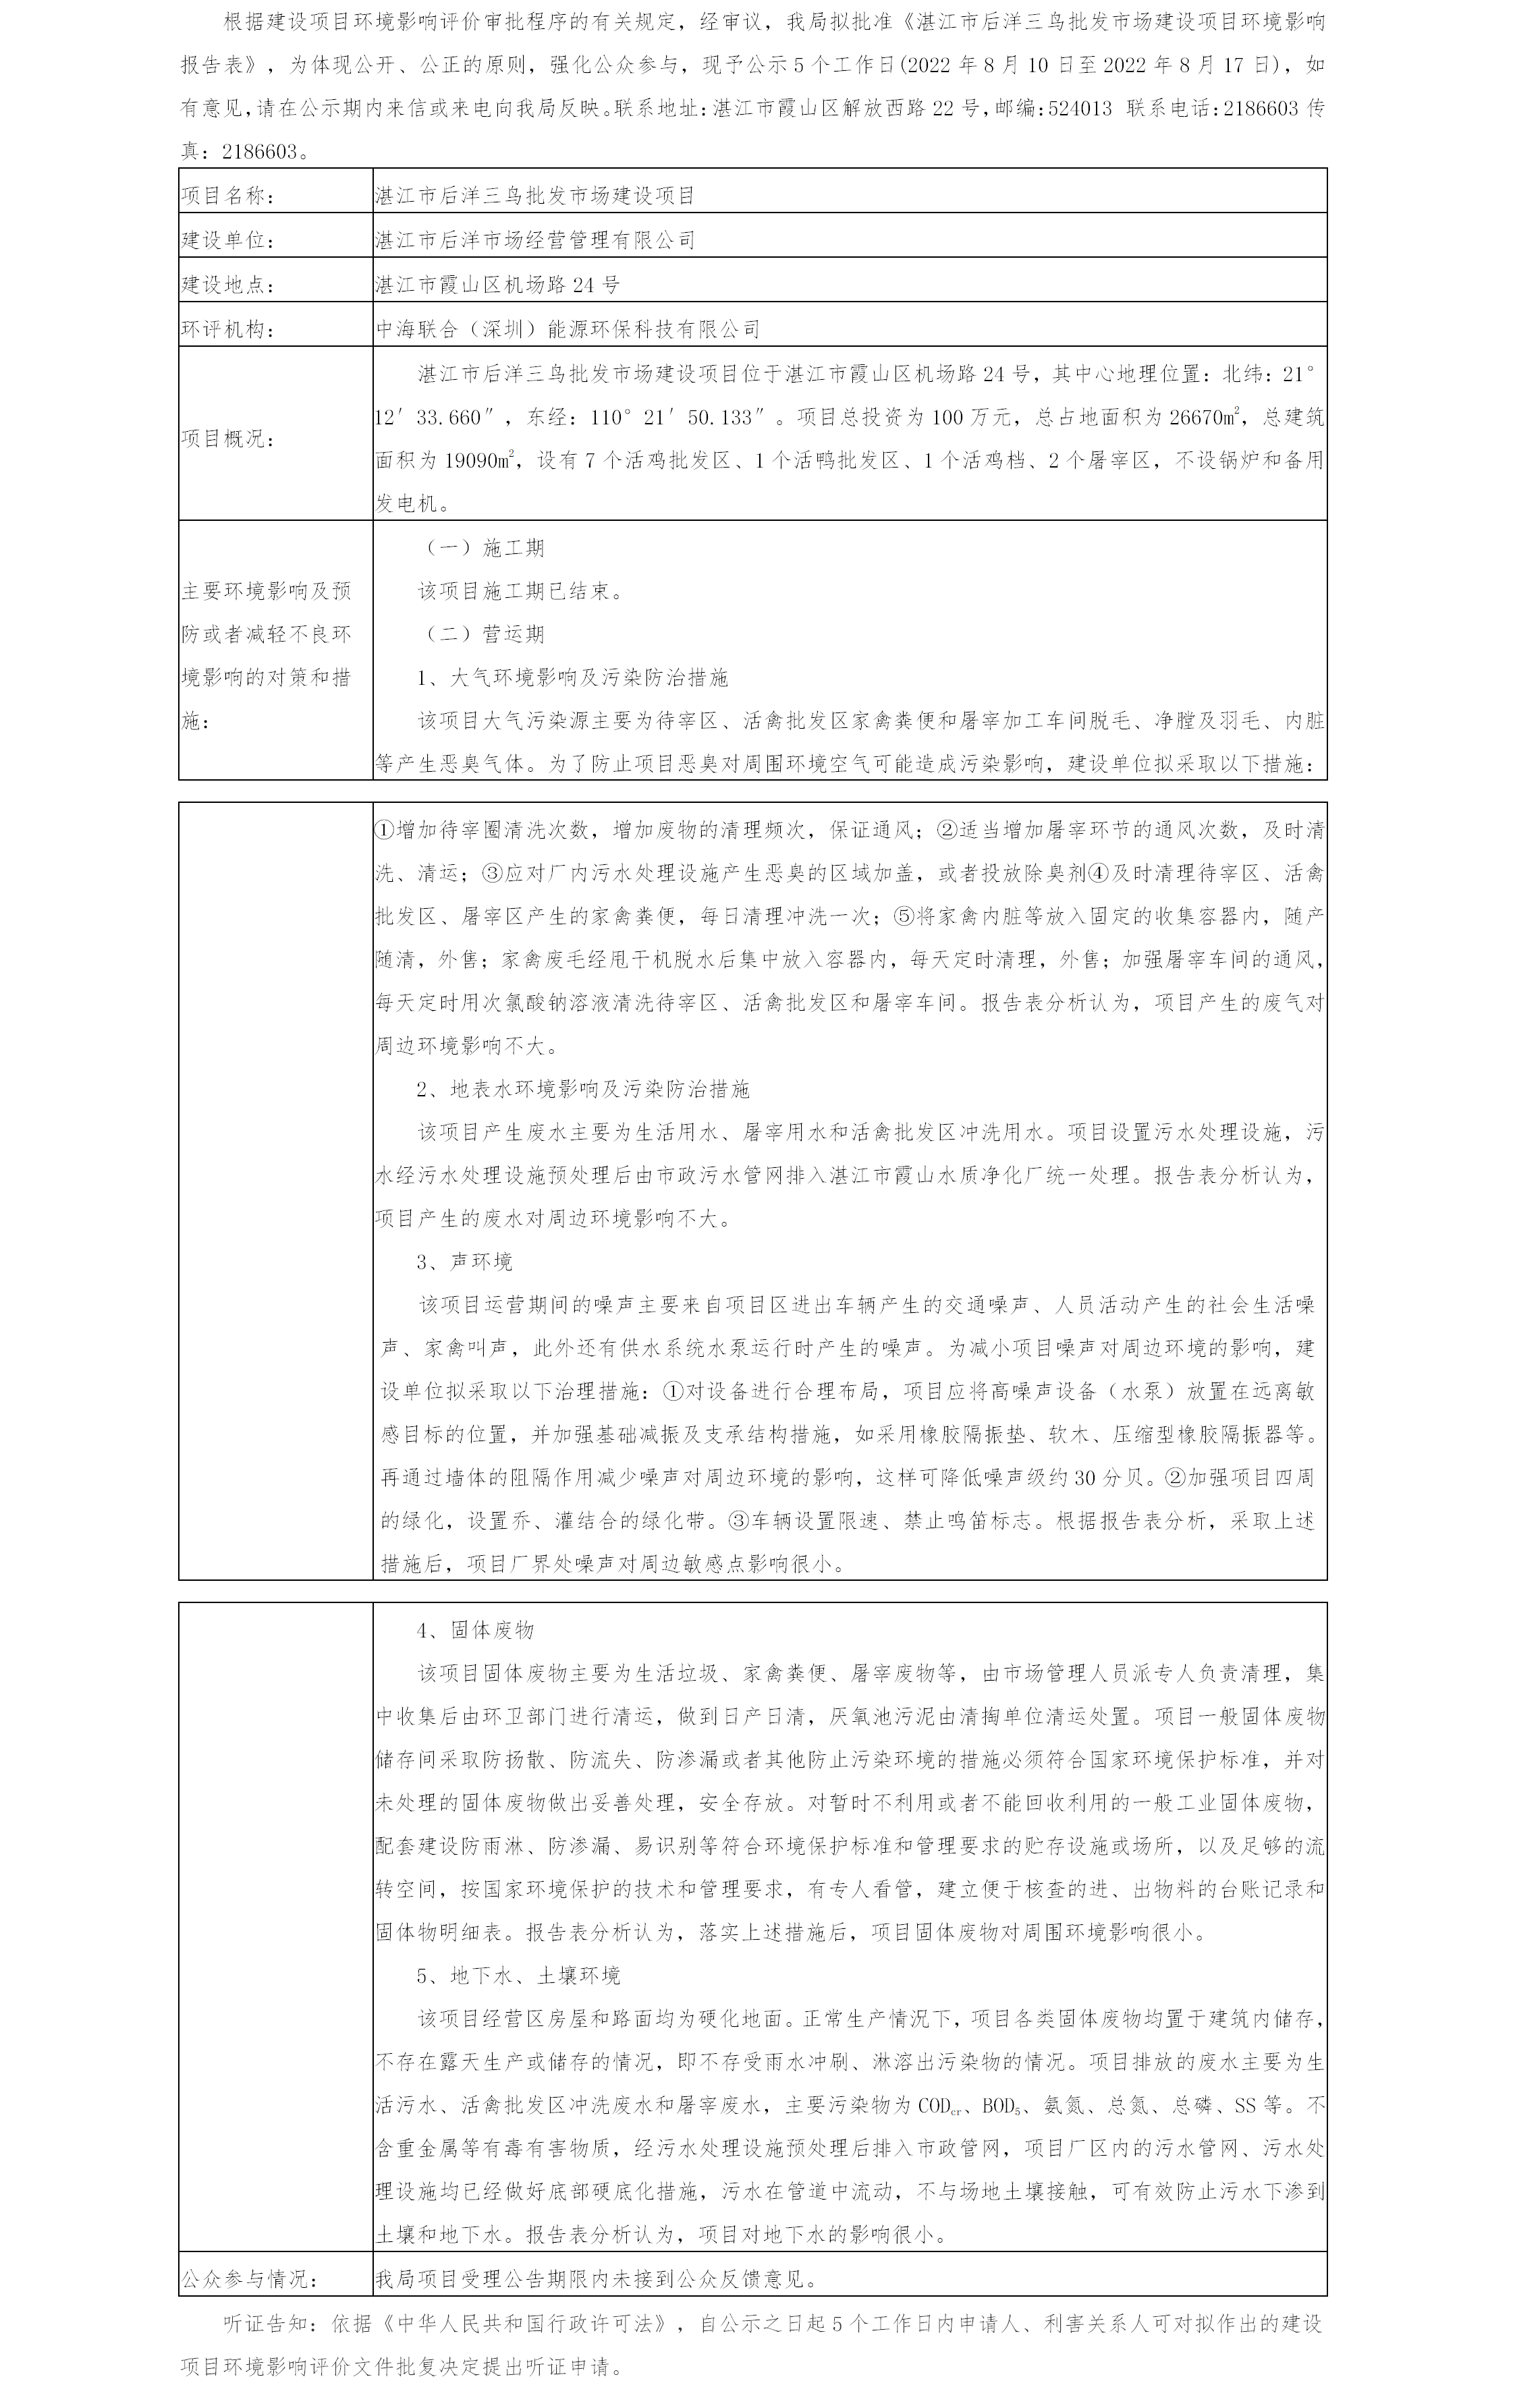 湛江市后洋三鸟批发市场建设项目环境影响报告表审批前公示.png